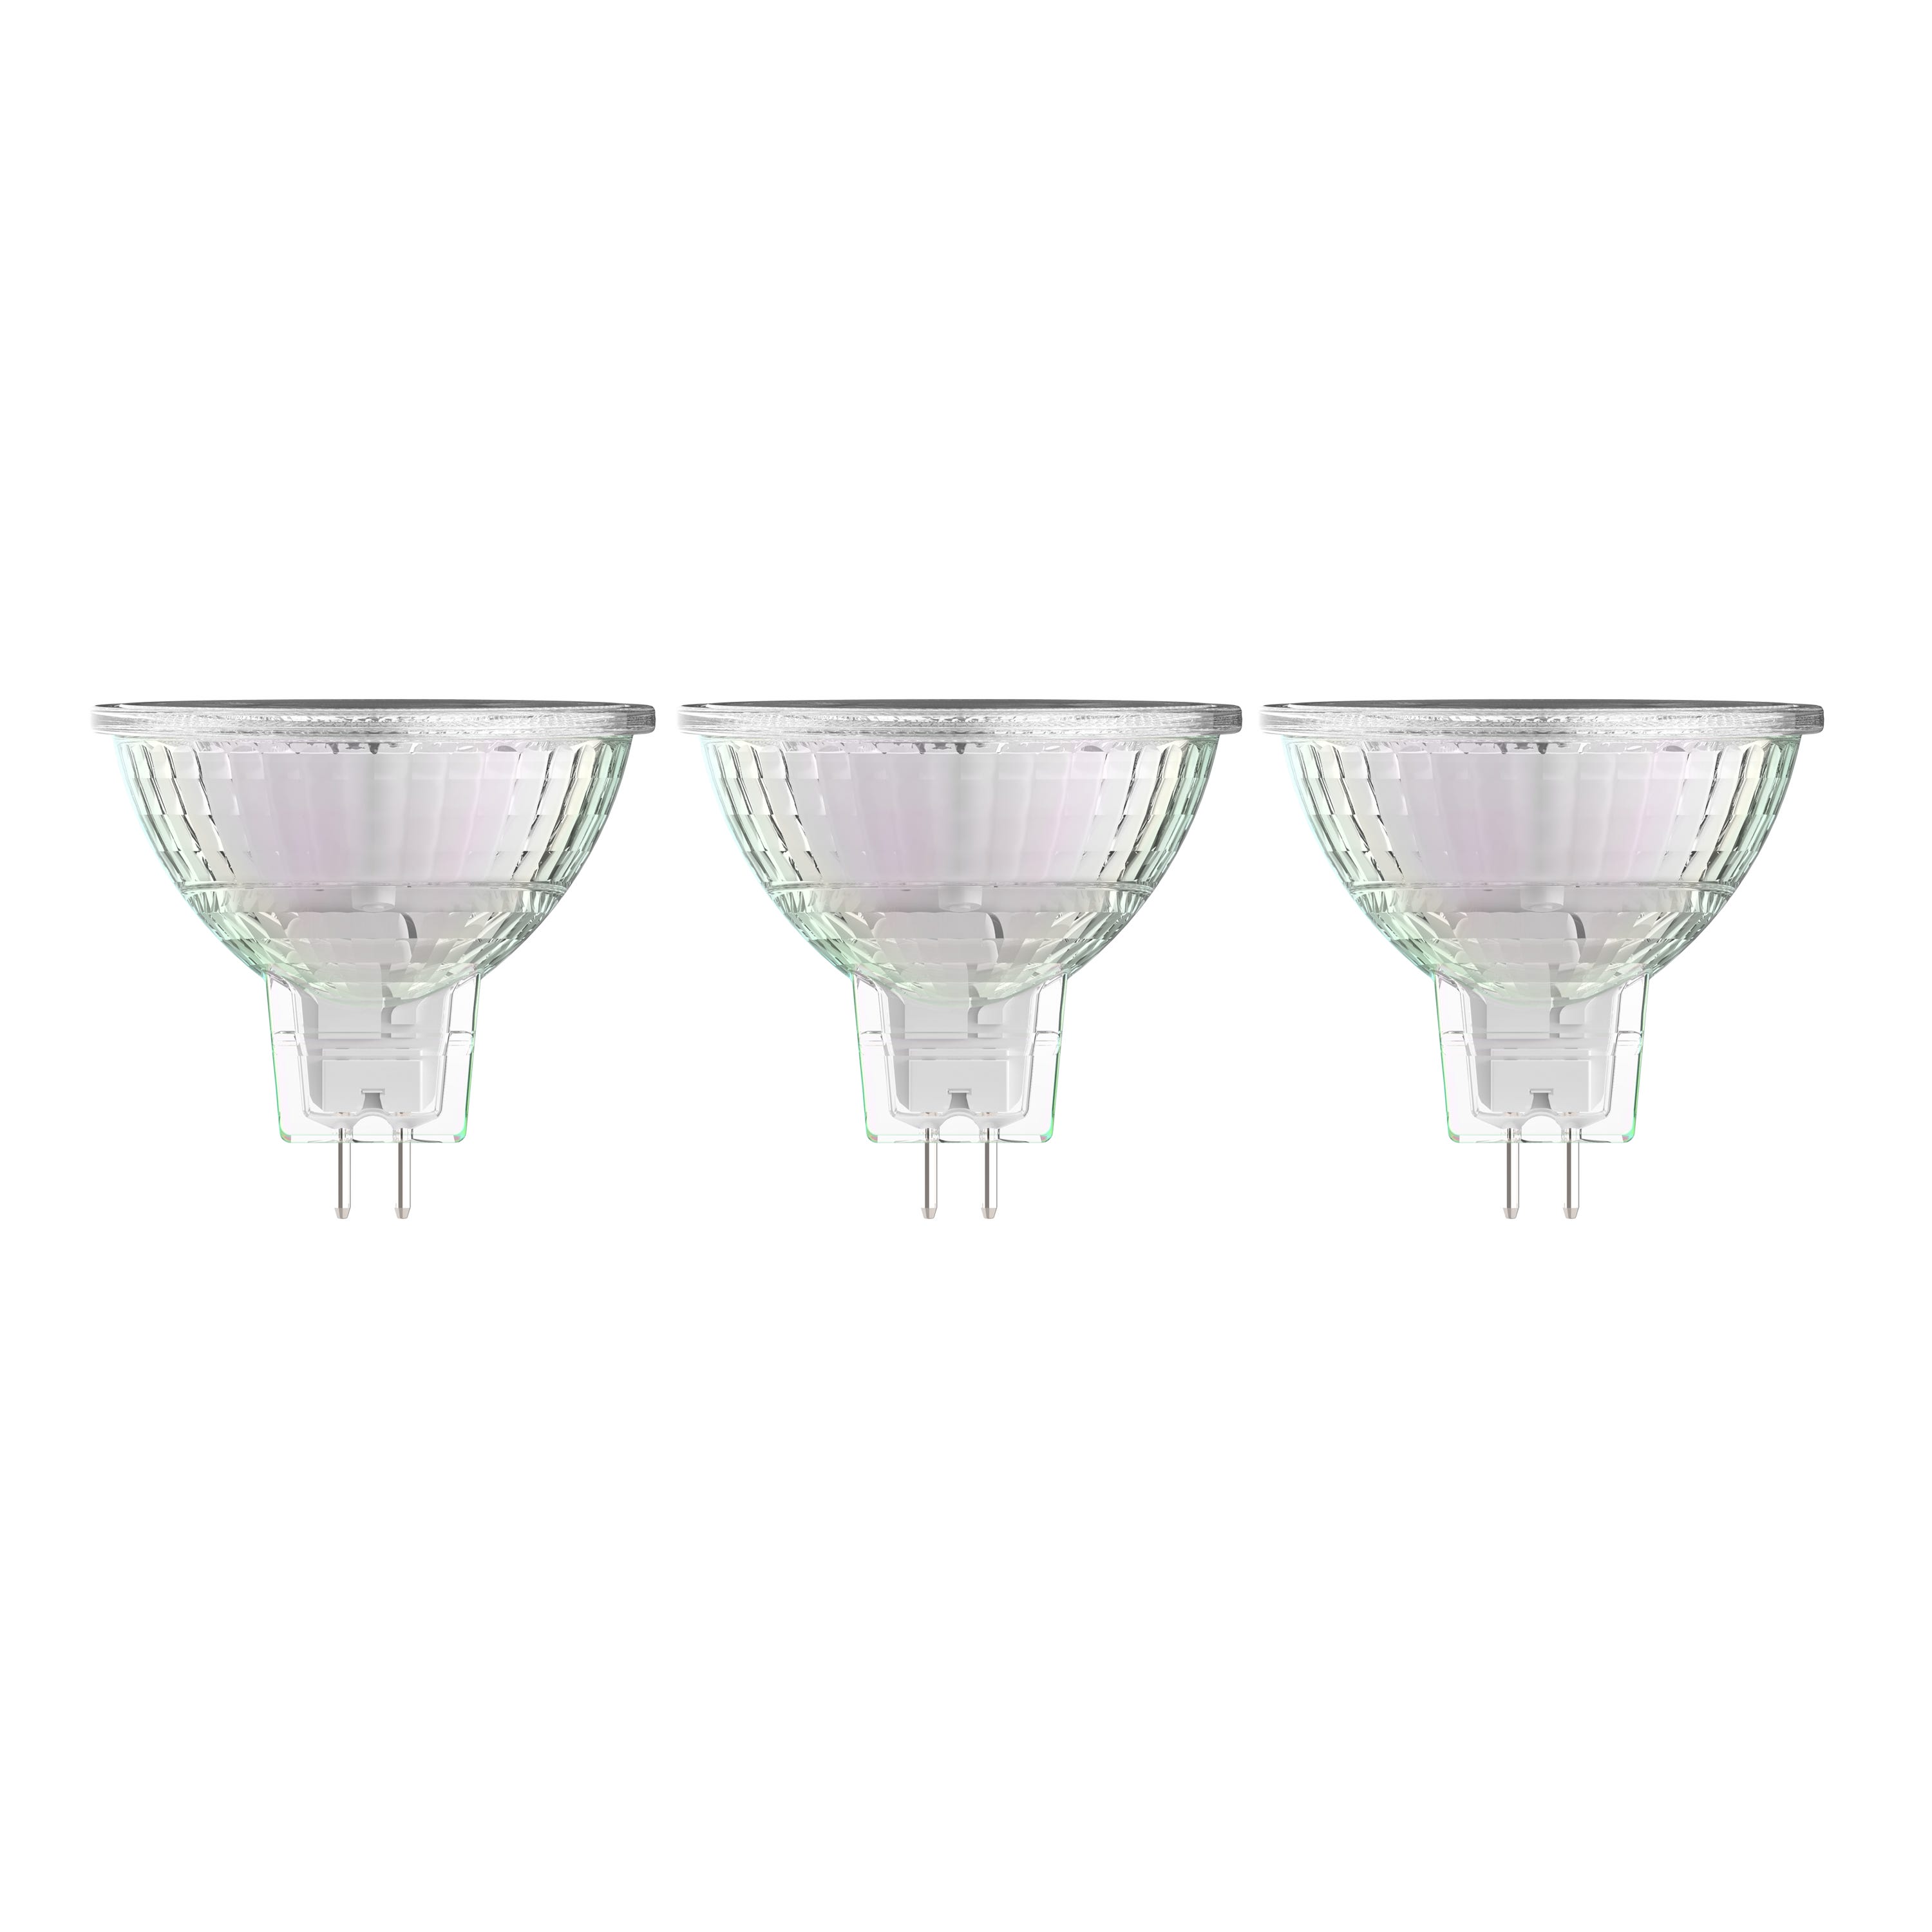 Kit 6 lampadine LED Philips - Faretto 4,6W (50W) - GU10 - Luce Calda